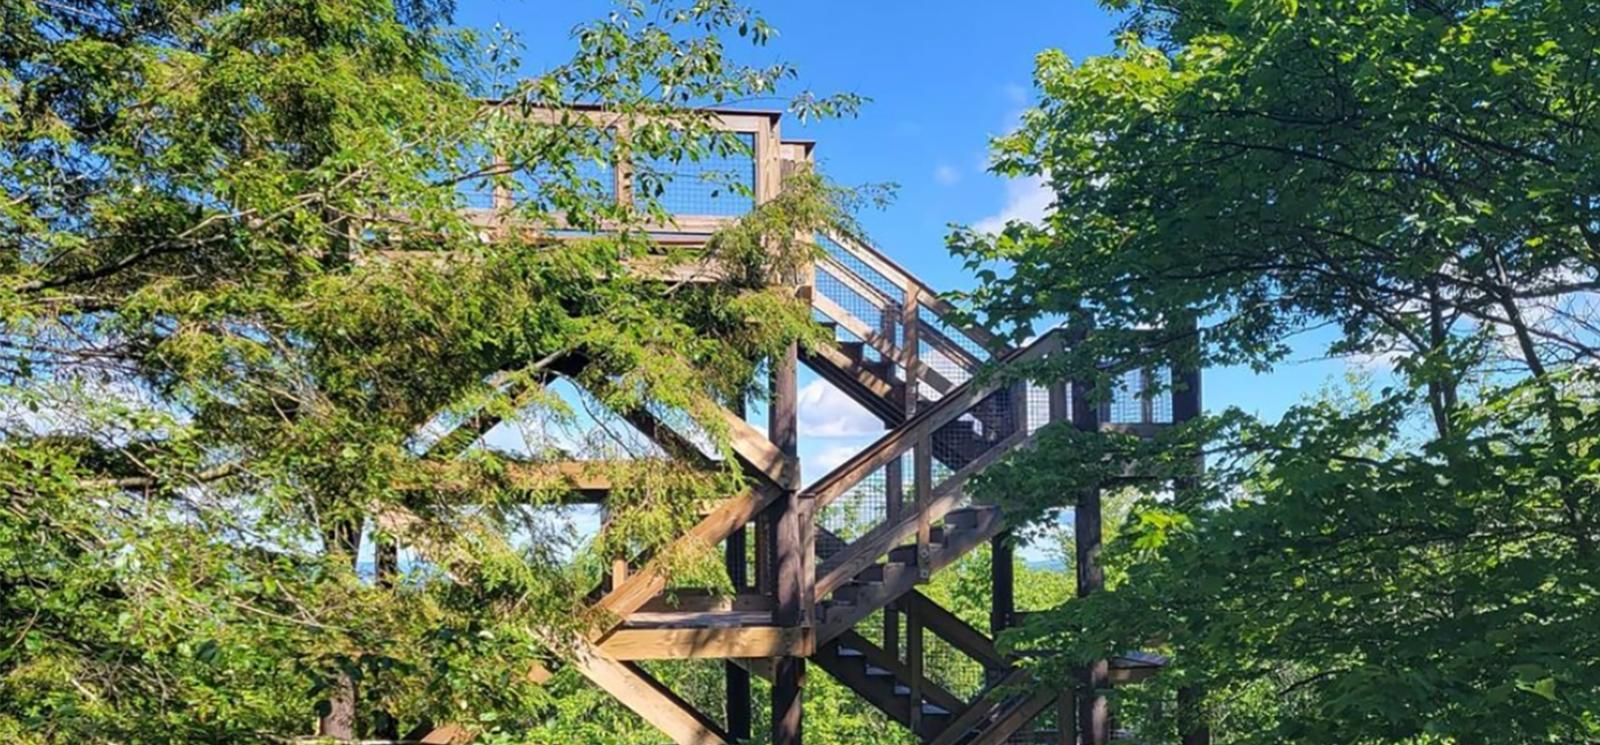 Una torre de madera en el bosque (Instagram@toddshiveley)